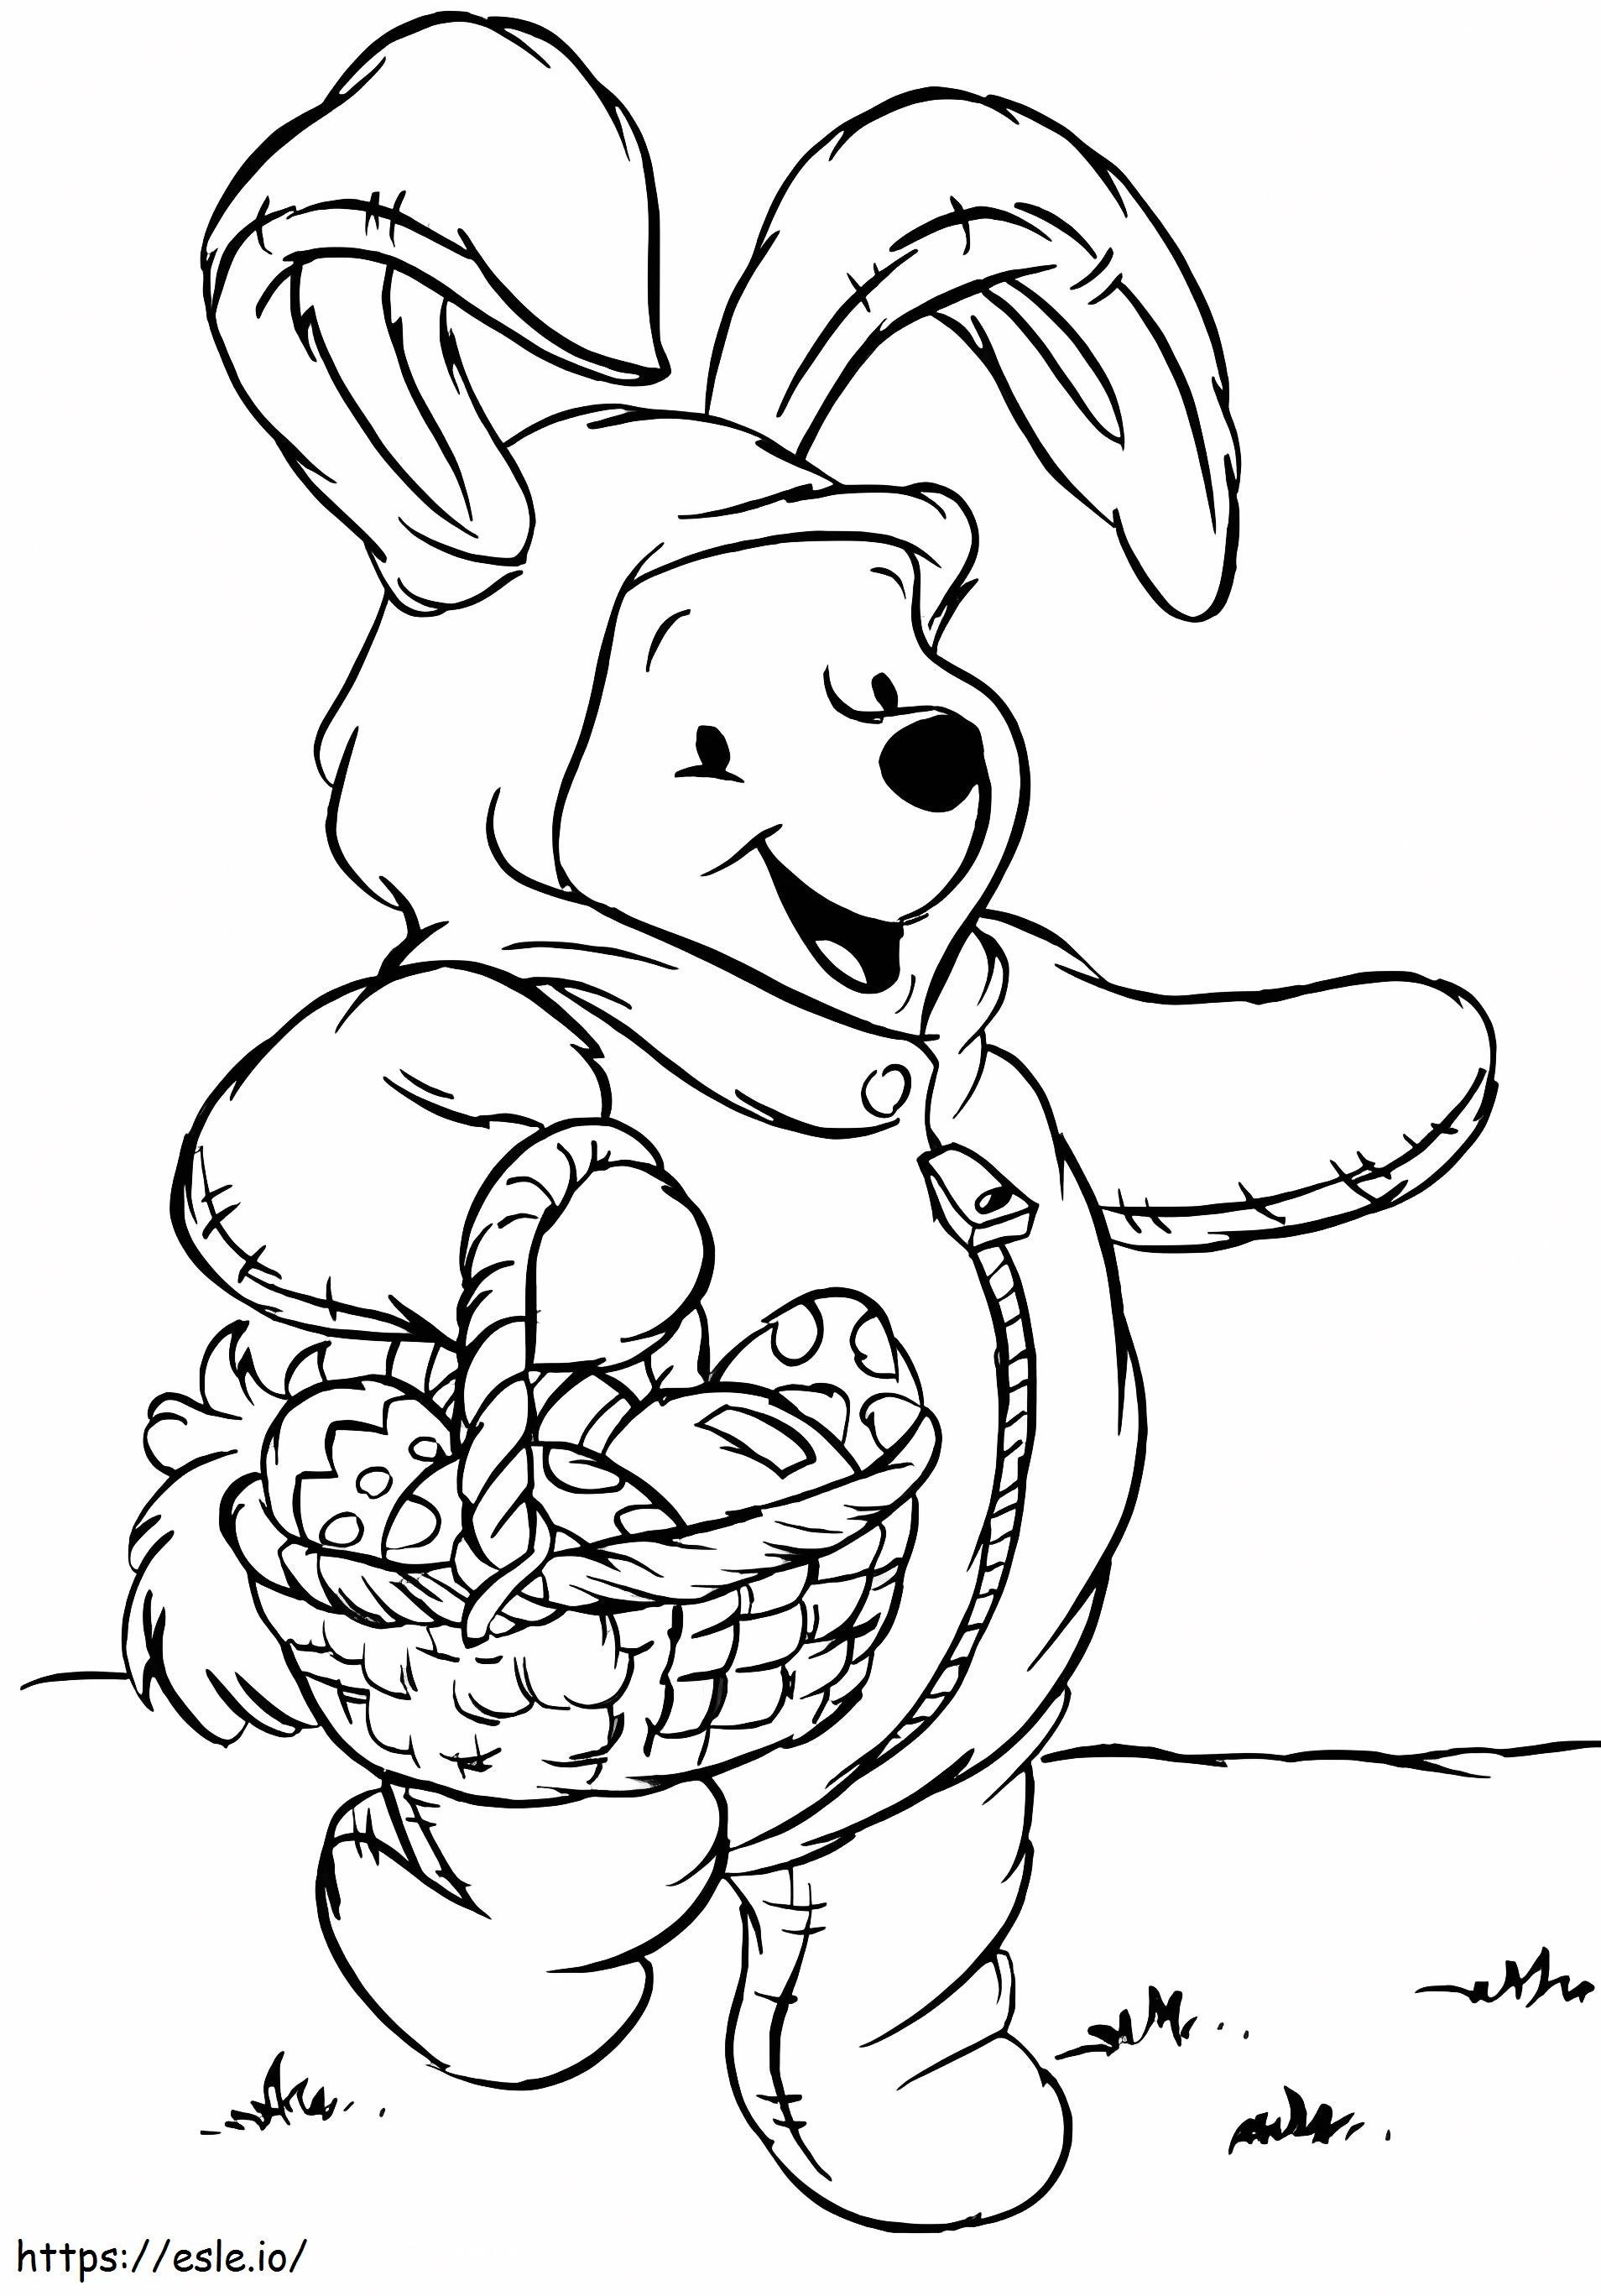 Oso Pooh sosteniendo una canasta de huevos de Pascua para colorear